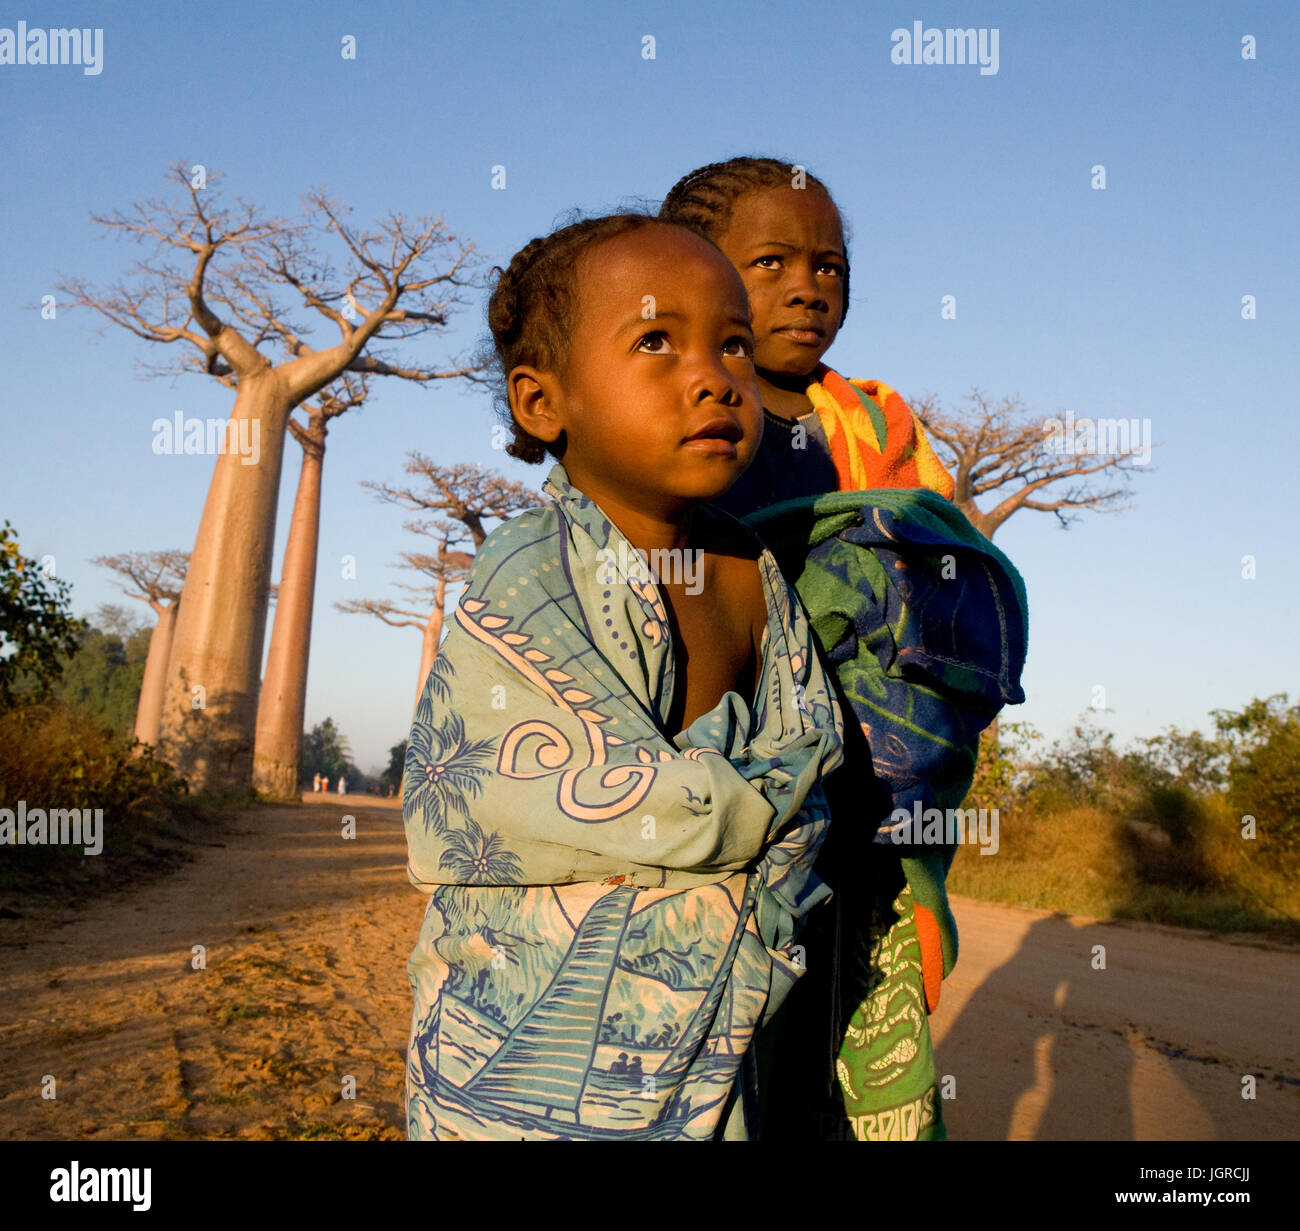 MADAGASCAR, Morondava - Agosto 10, 2011: i bambini sul vicolo di baobab nelle prime ore del mattino. Madagascar, Morondava. Agosto 10, 2011. Foto Stock